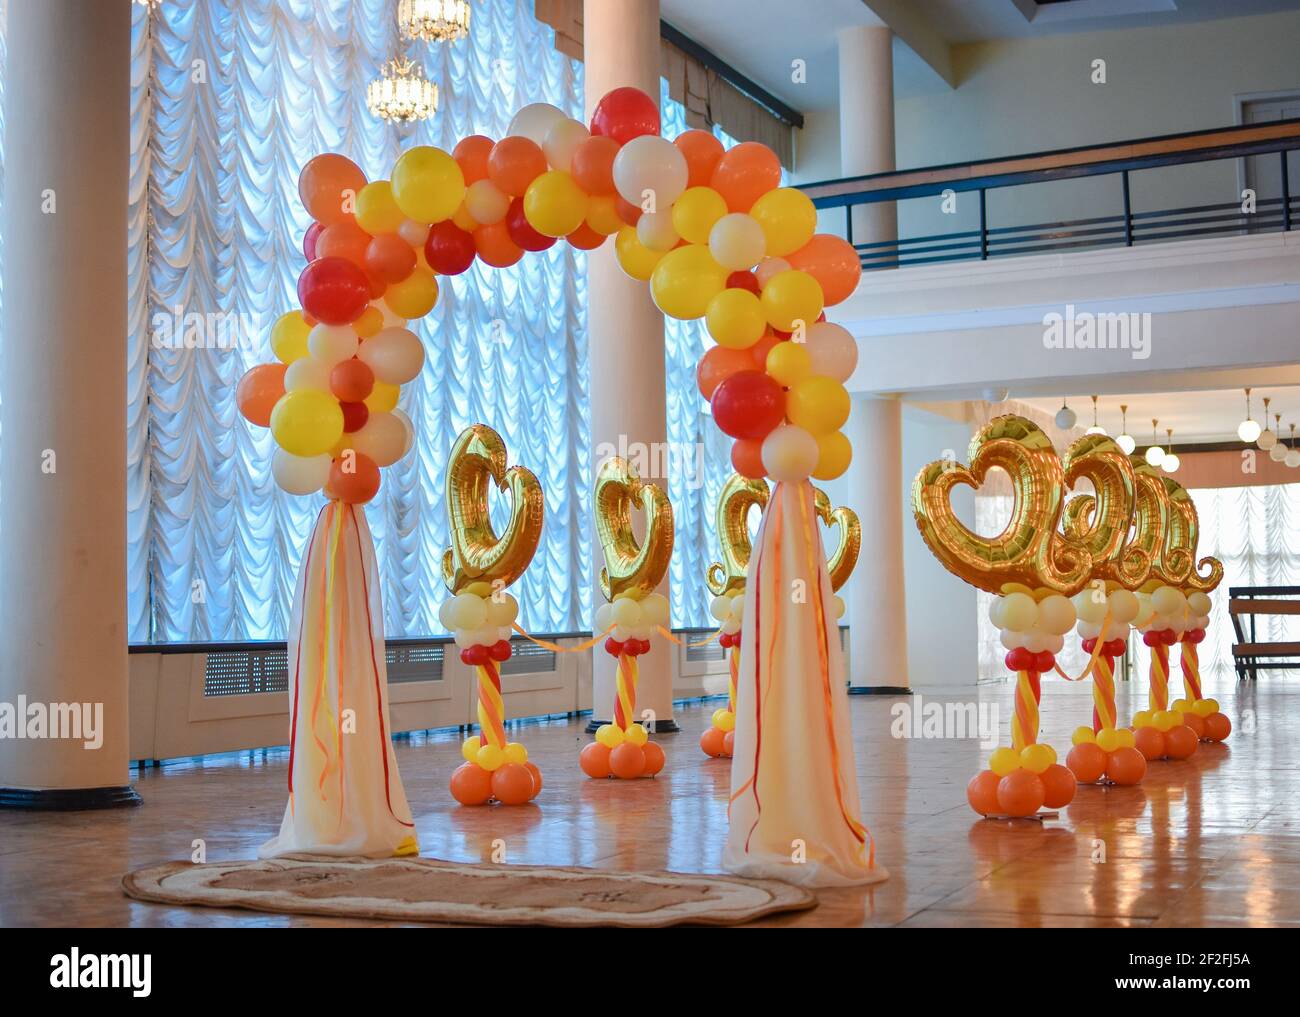 Ballon Dekorationen für die Hochzeitszeremonie. Ohne Menschen. Stockfoto